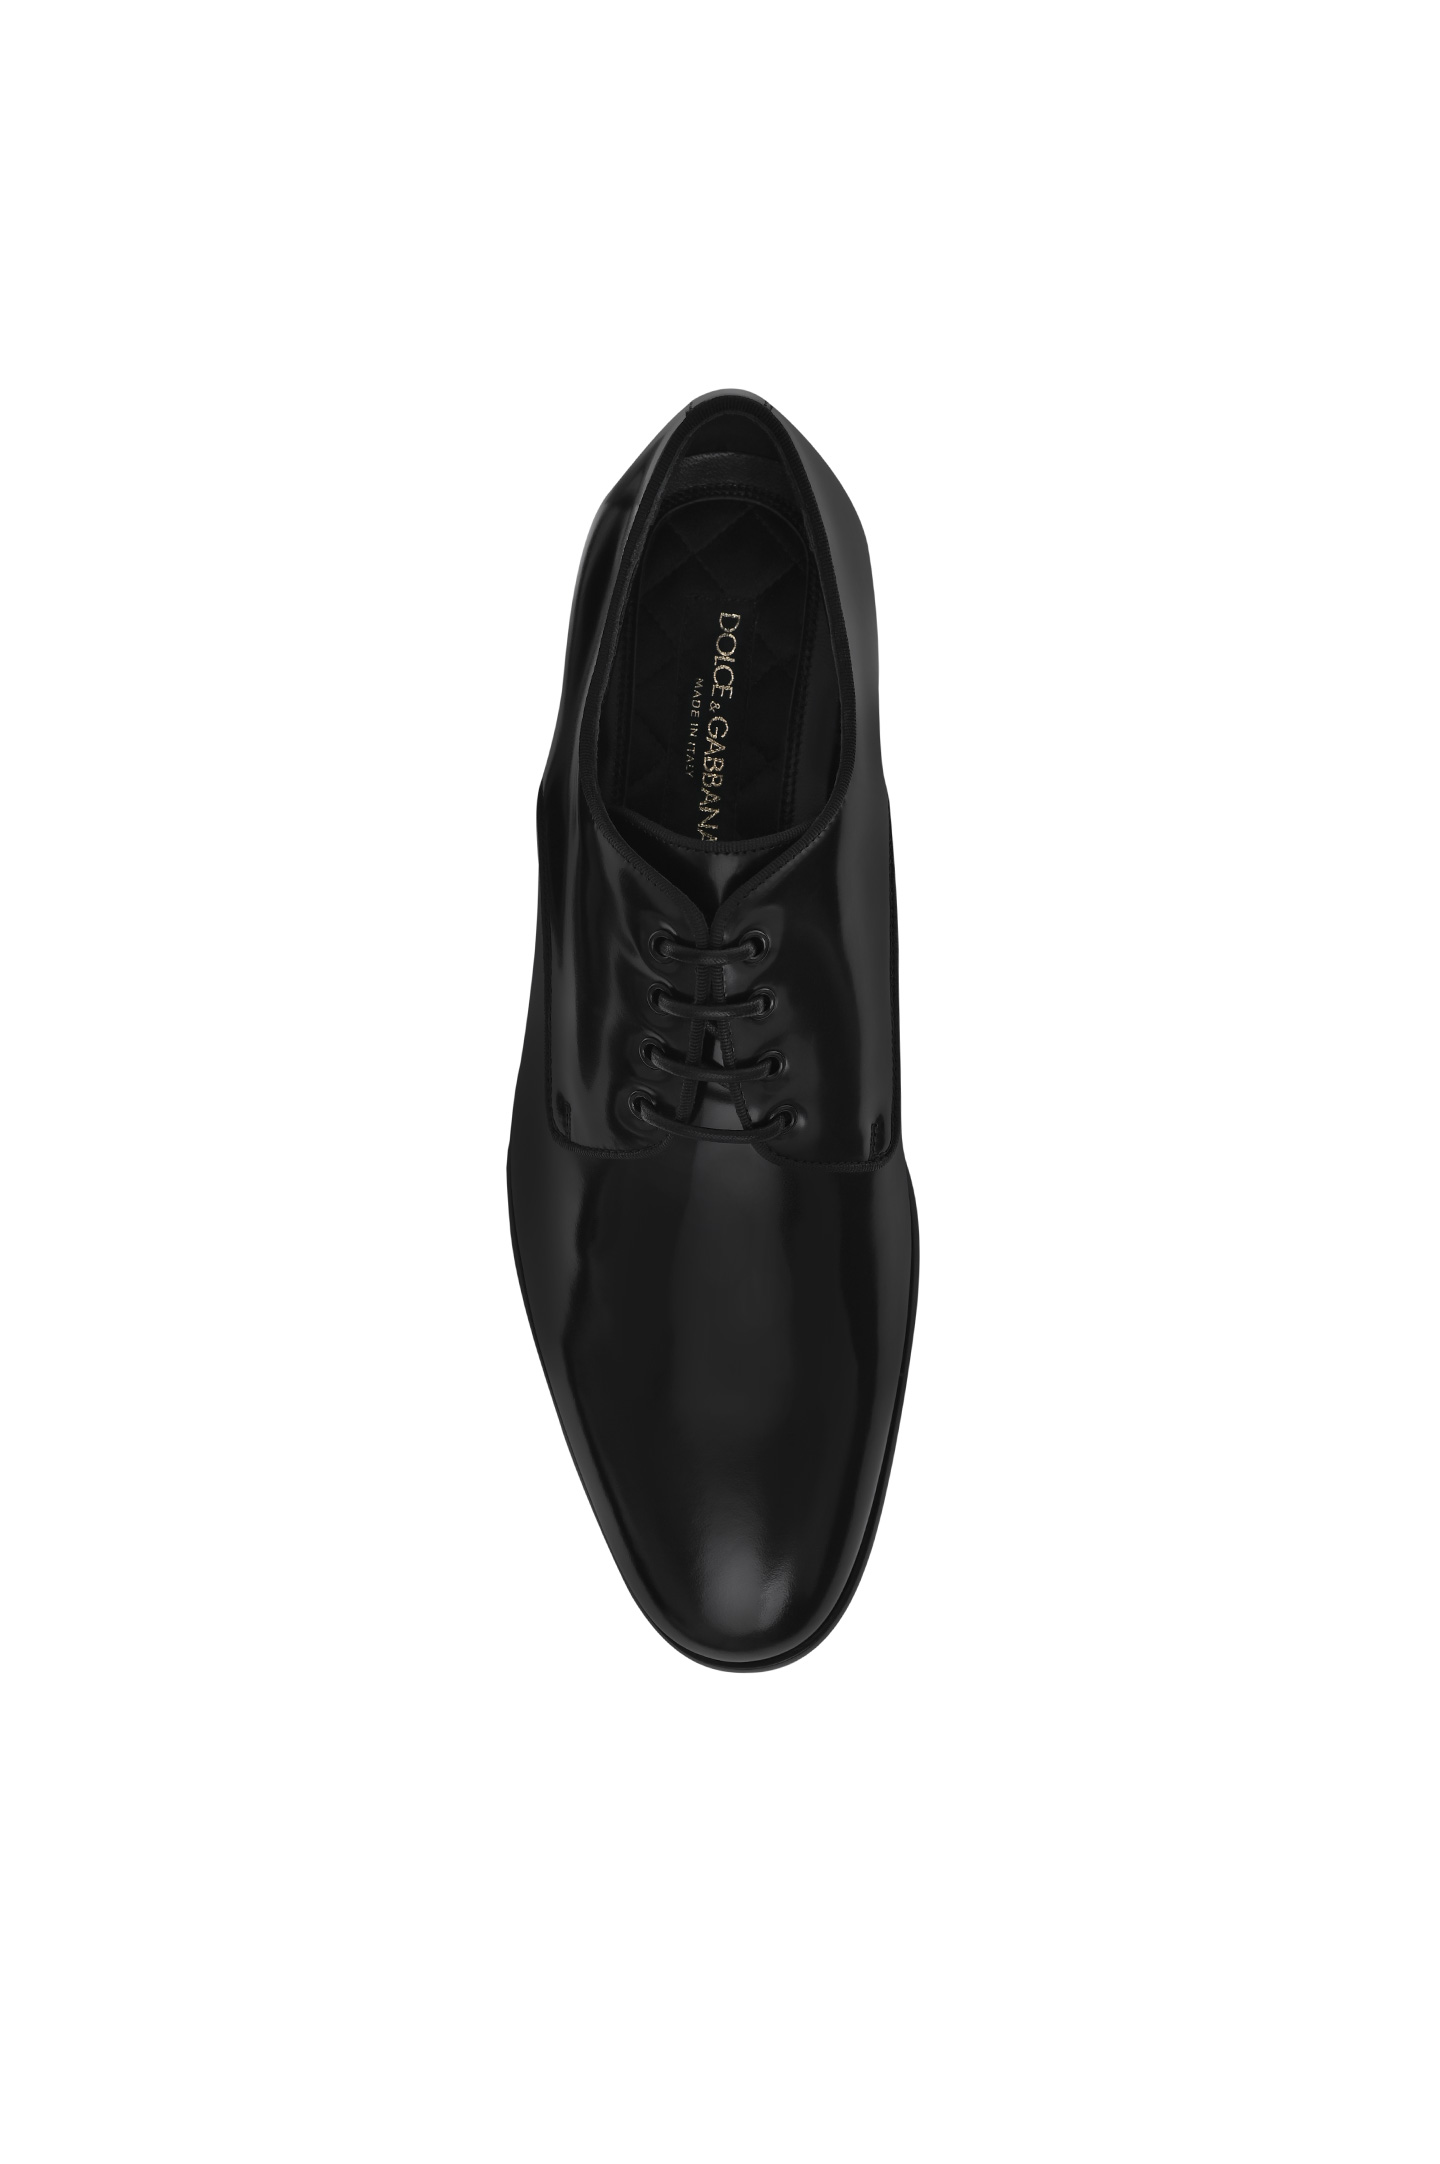 Туфли DOLCE & GABBANA A10703 A1203, цвет: Черный, Мужской